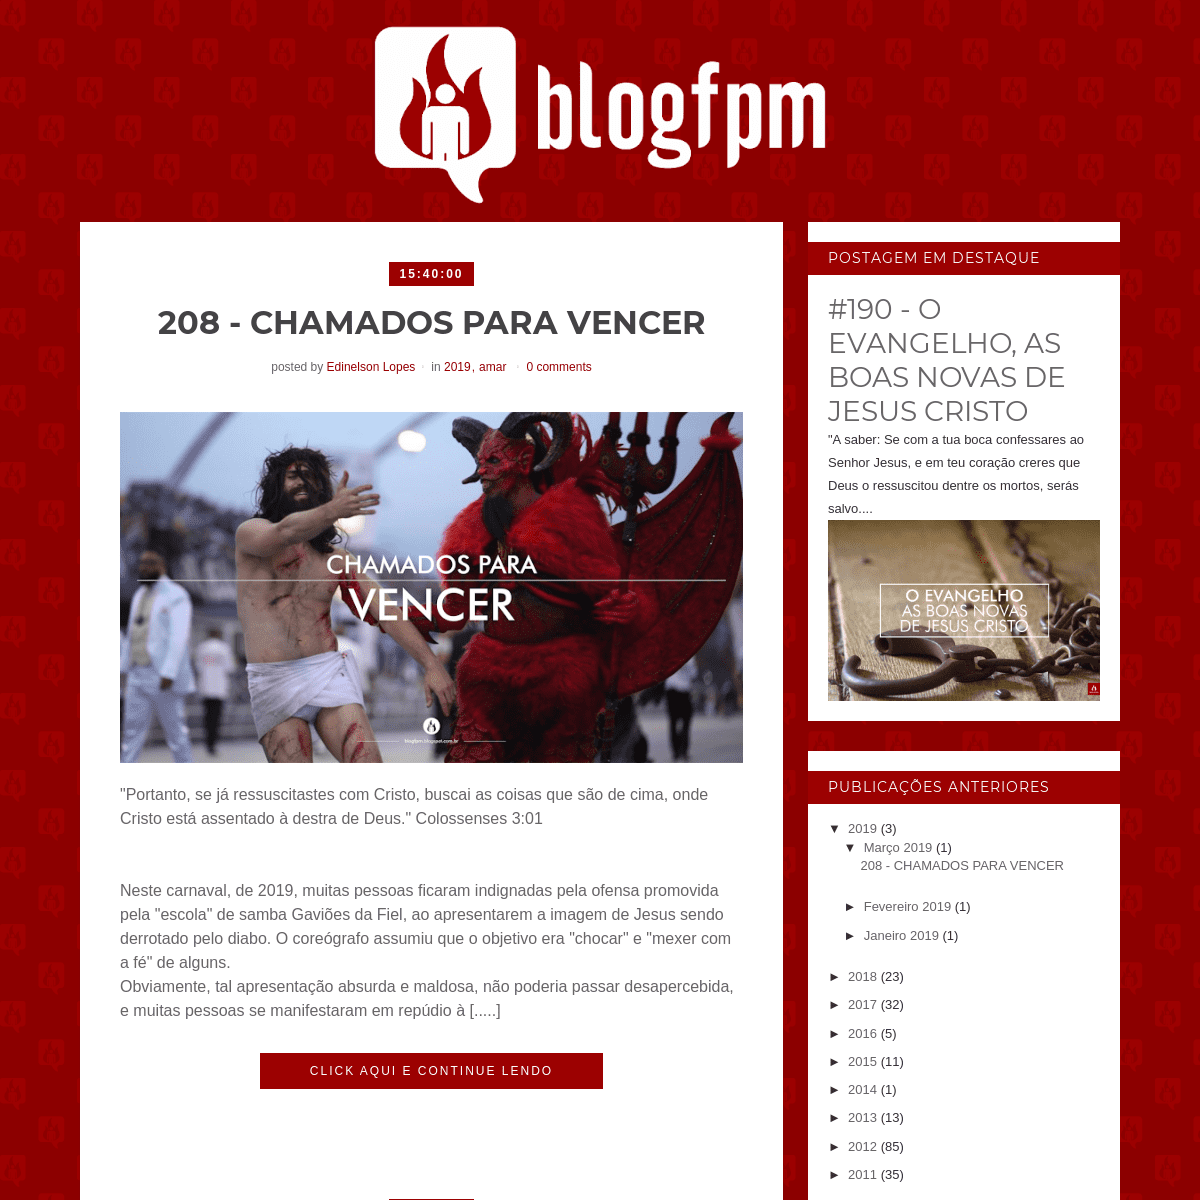 A complete backup of blogfpm.blogspot.com